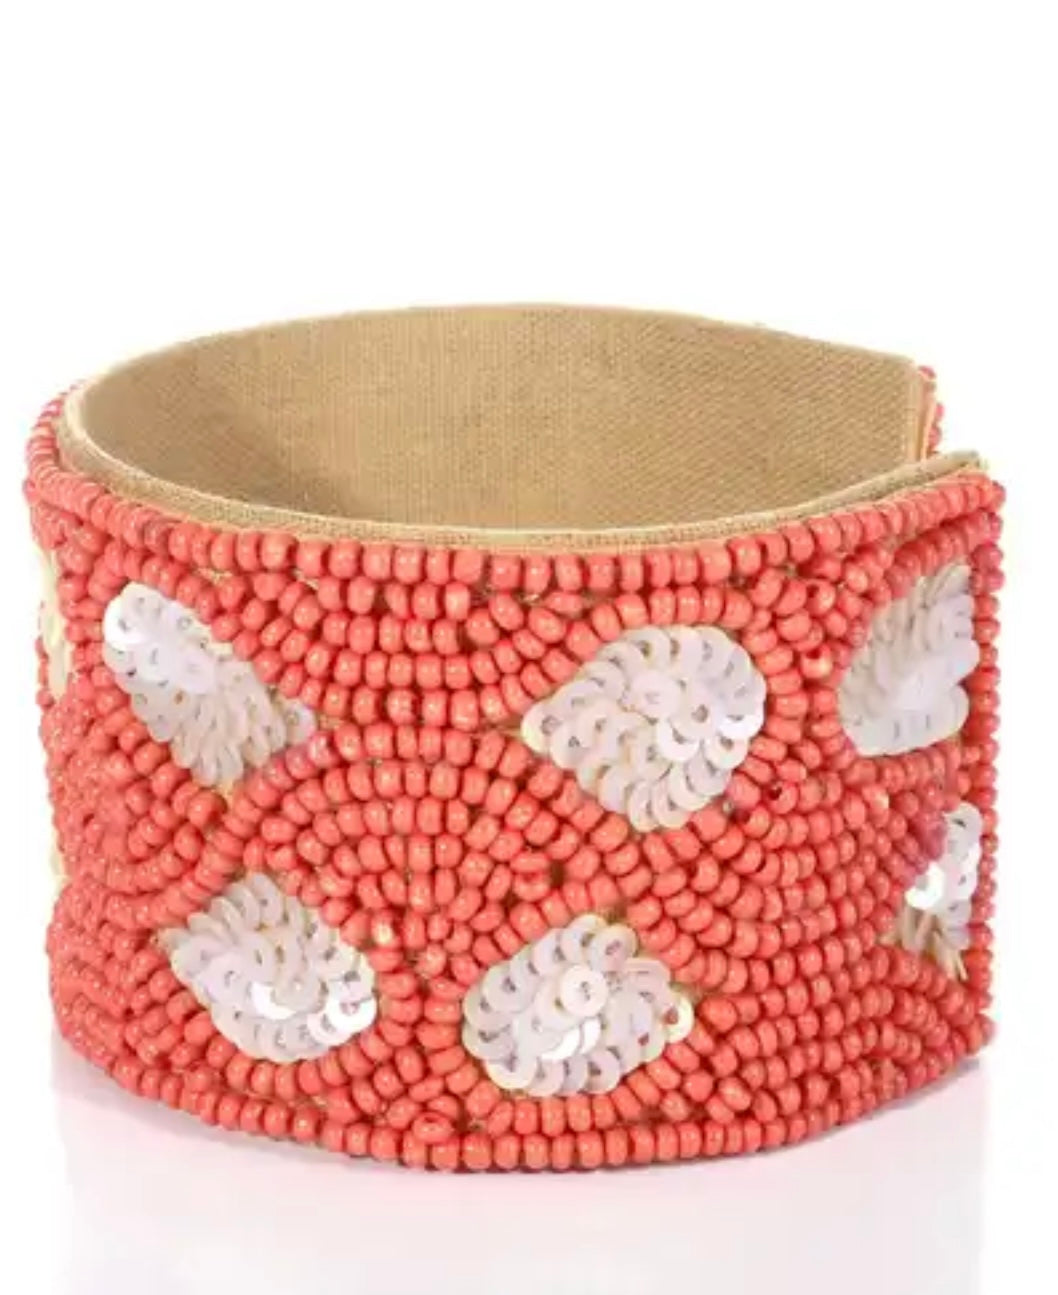 Coral Cuff Bracelet